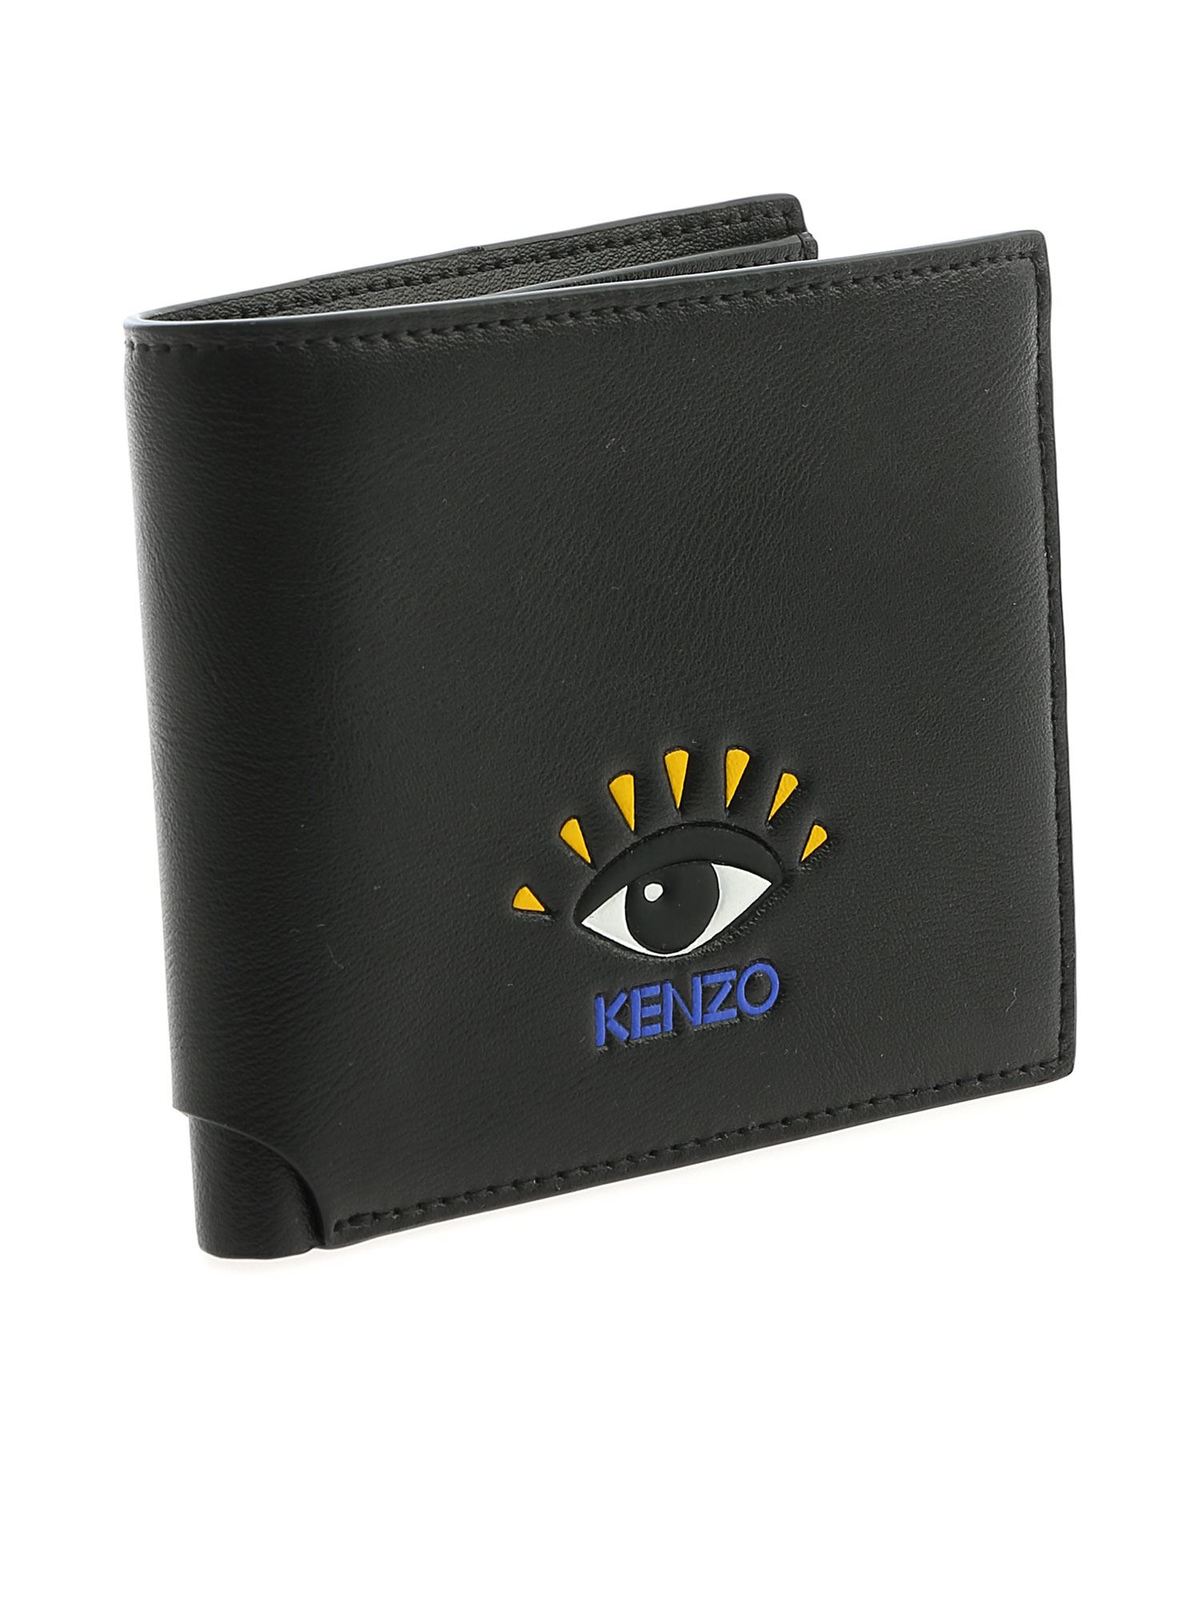 Kenzo - Kenzo Eye wallet in black 